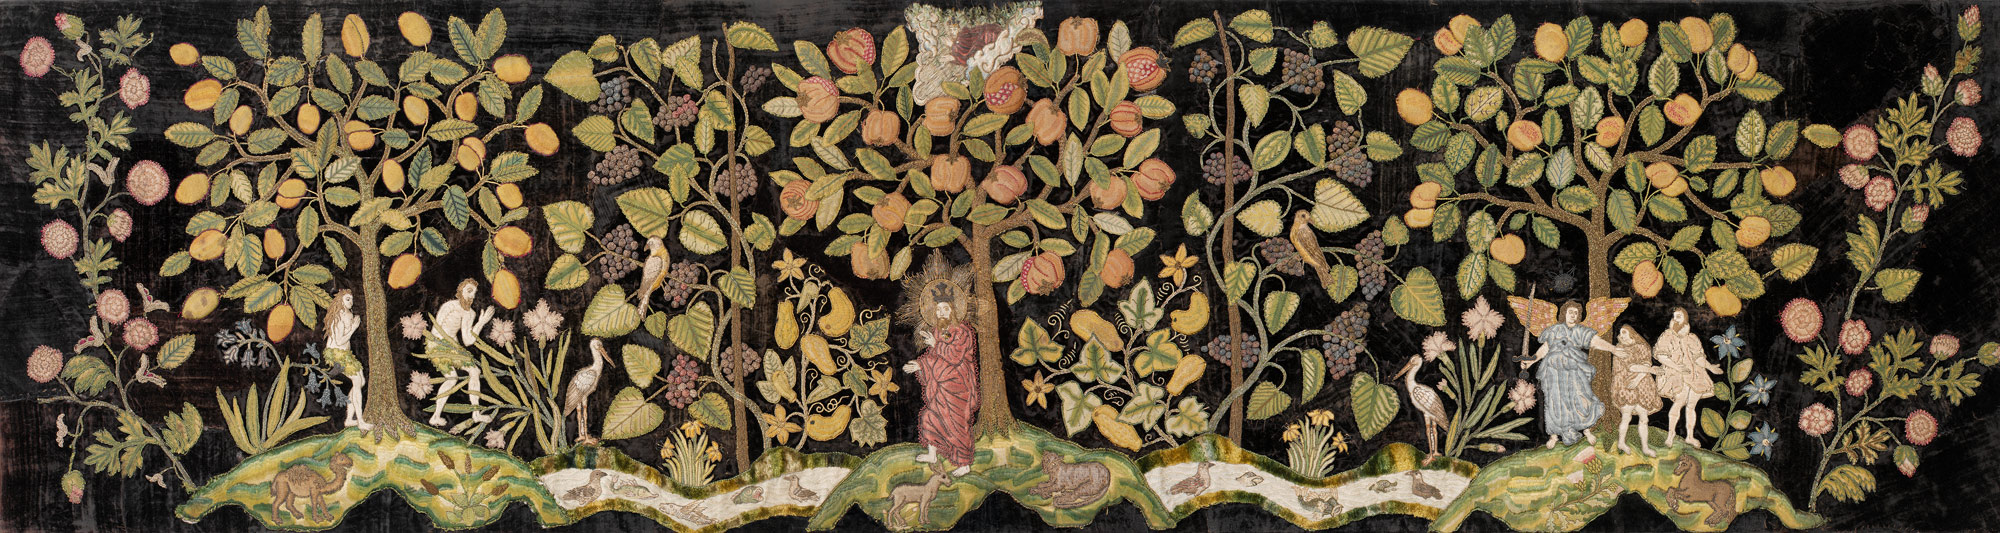 Garden of Eden | Work of Art | Heilbrunn Timeline of Art History | The